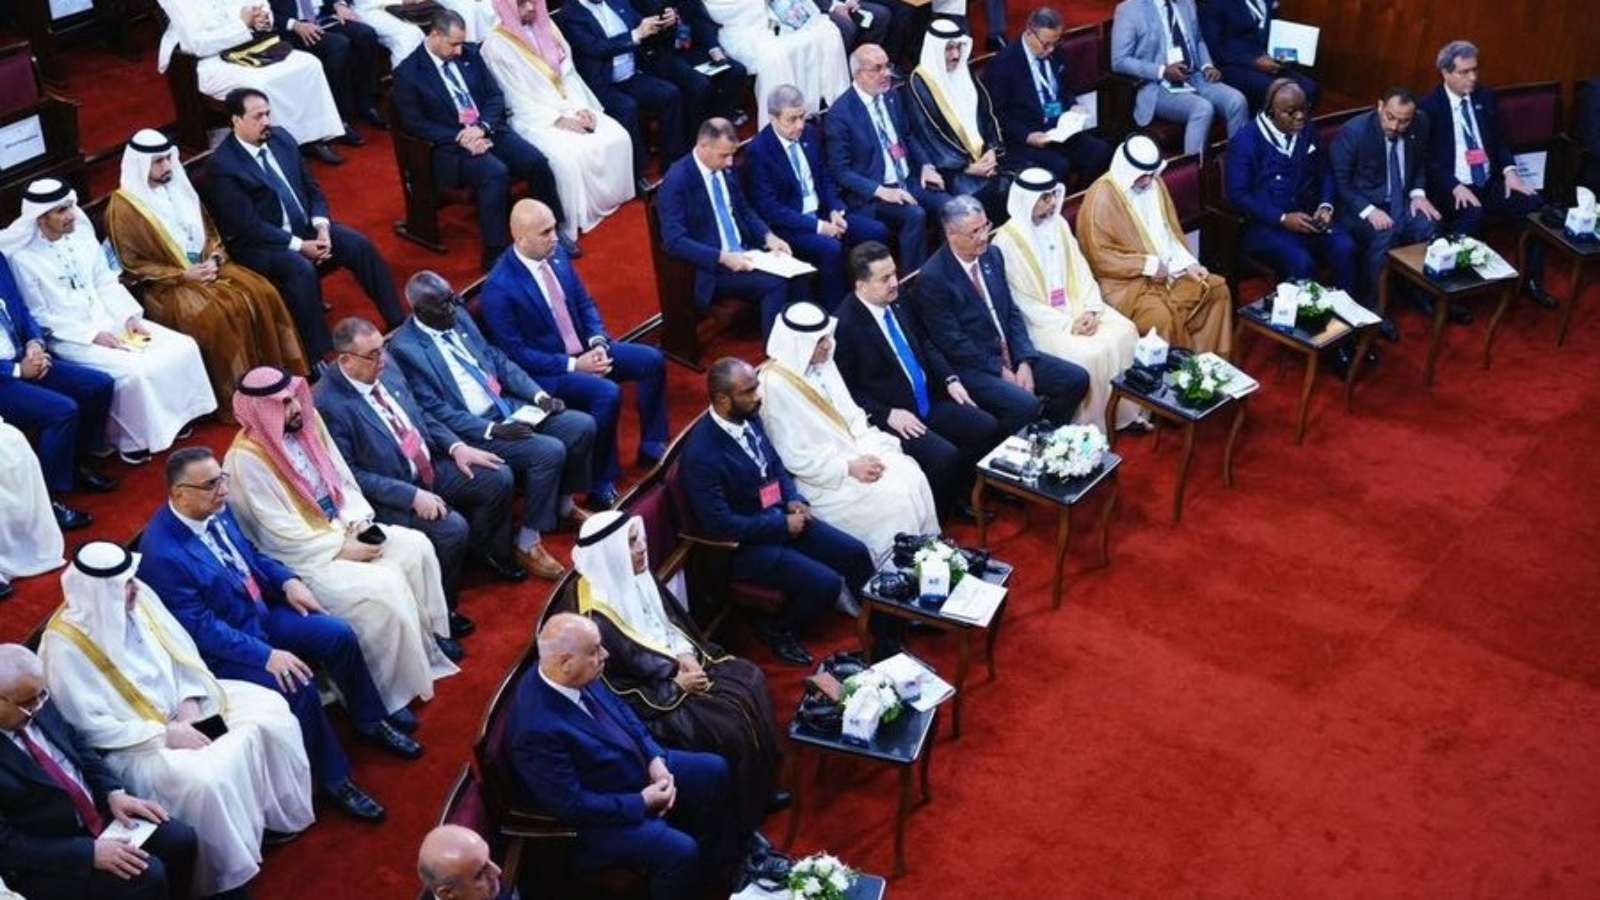 وفد دول منظمة اوبك المشاركة في احتفالية الذكرى 63 لتأسيس المنظمة في بغداد (رسمي)